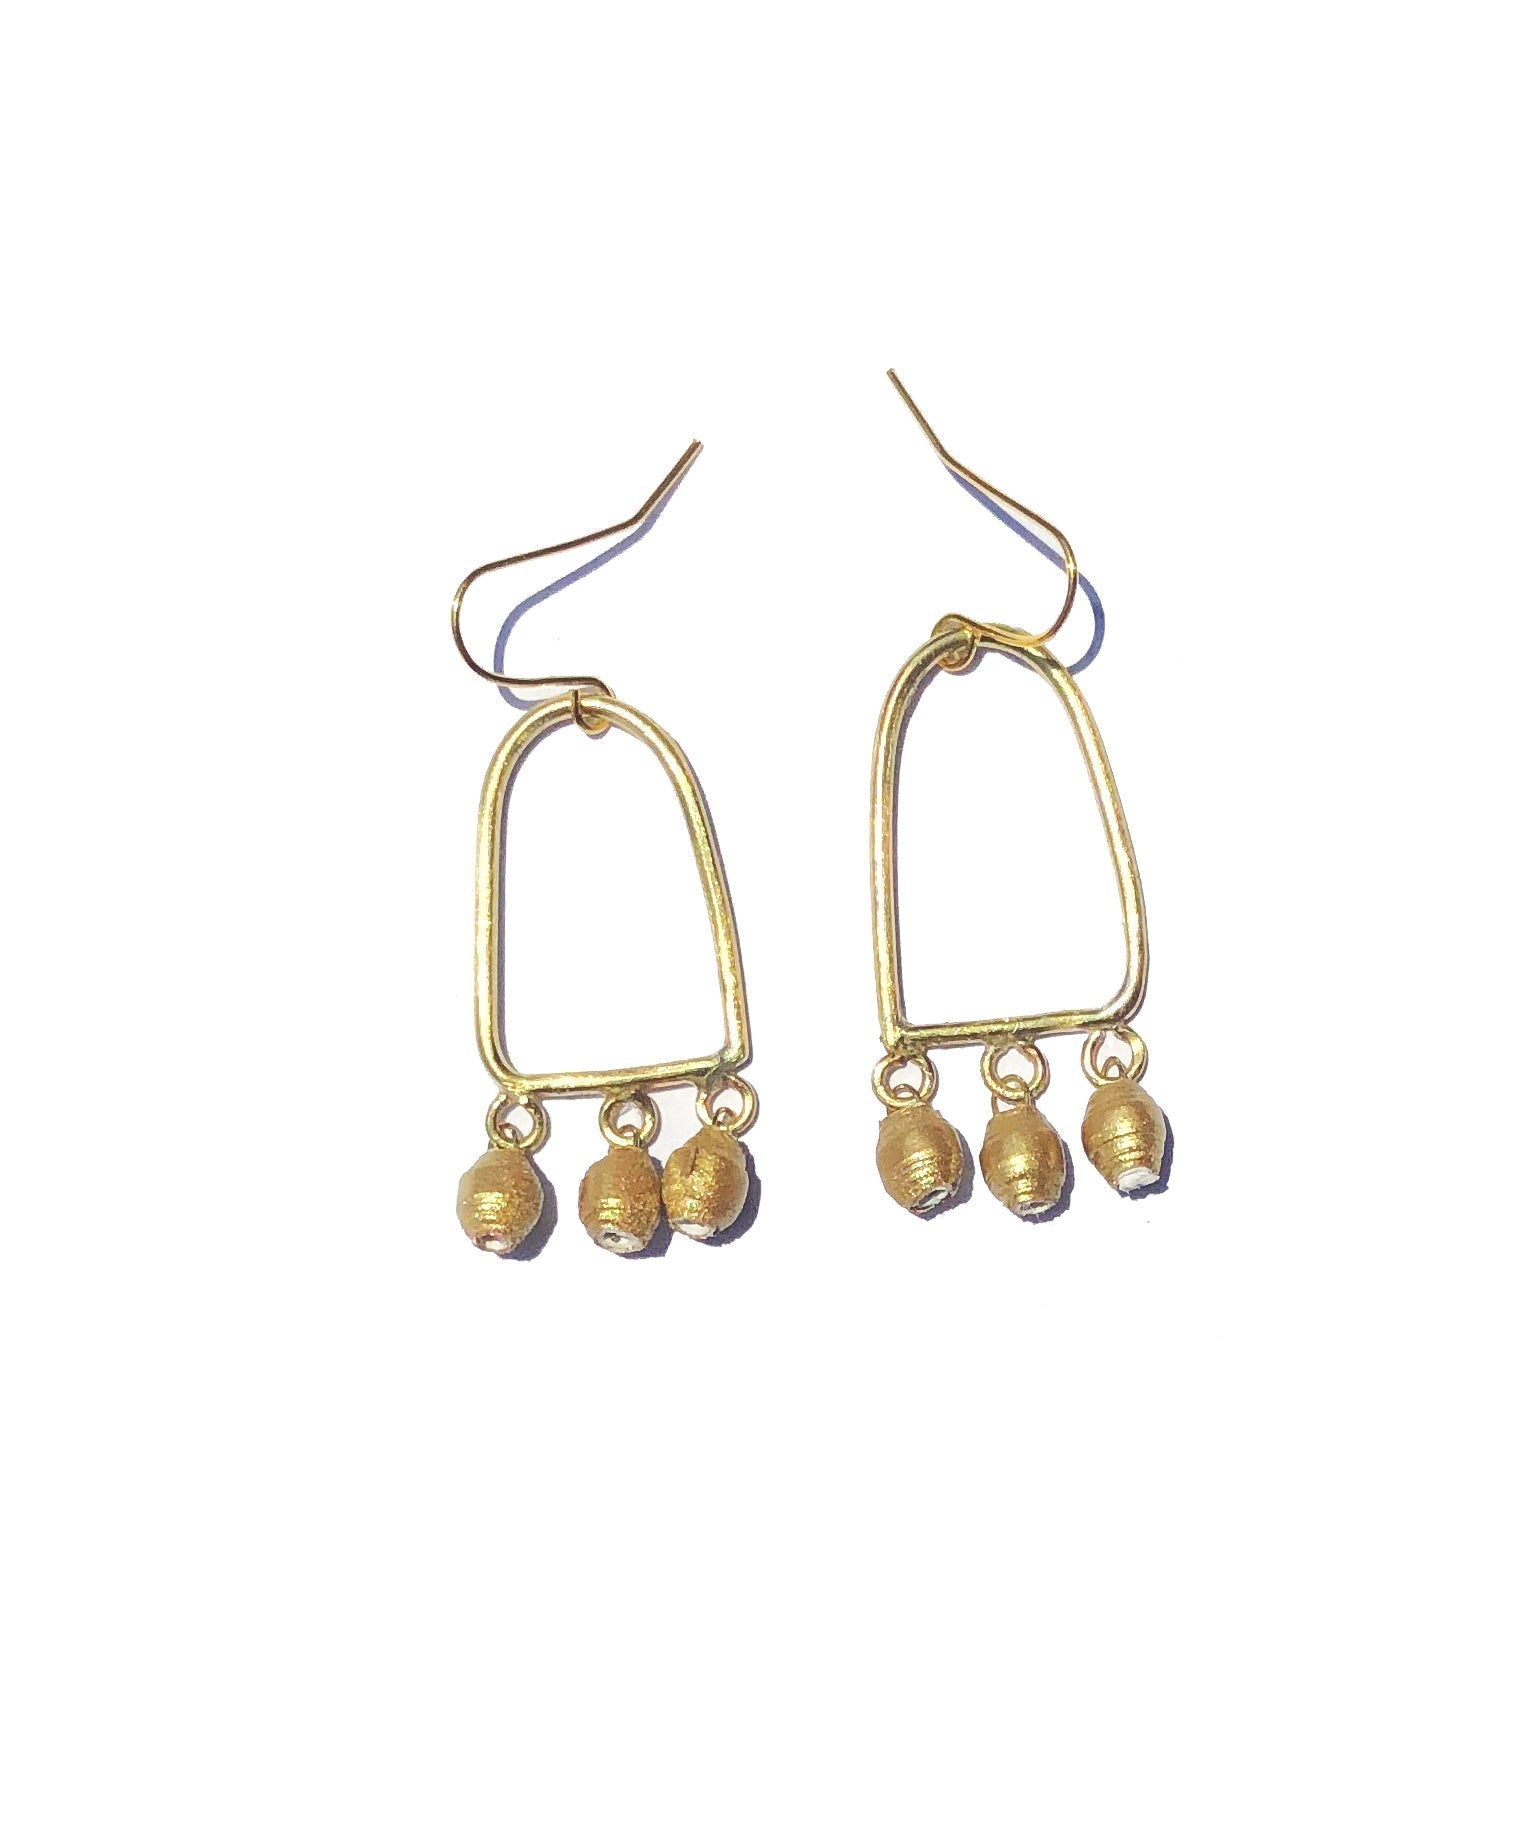 Bongiwe Gold Earring - The Nancy Smillie Shop - Art, Jewellery & Designer Gifts Glasgow